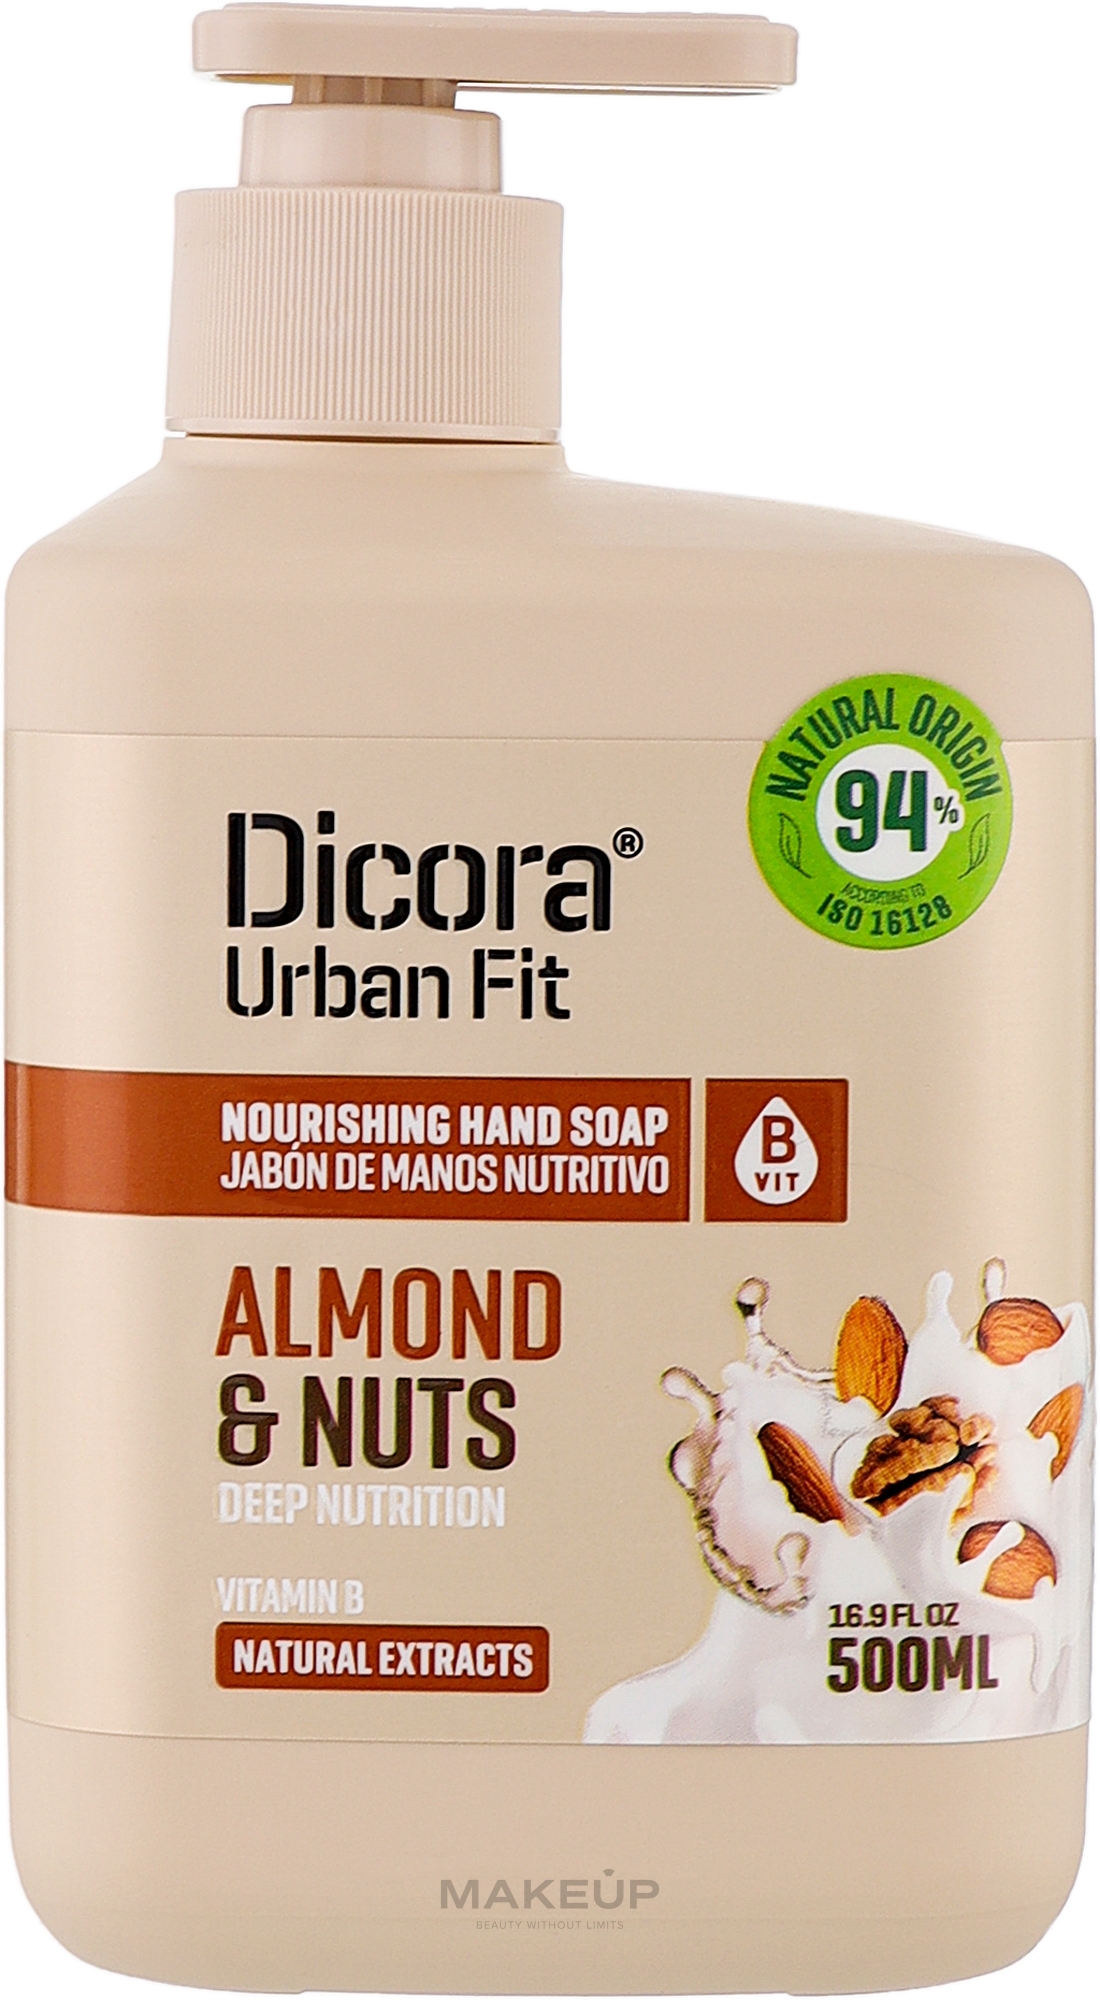 Flüssige Handseife mit Vitamin B und Mandel- und Nüsseduft - Dicora Urban Fit Nourishing Hand Soap Vit B Almont & Nuts — Bild 500 ml